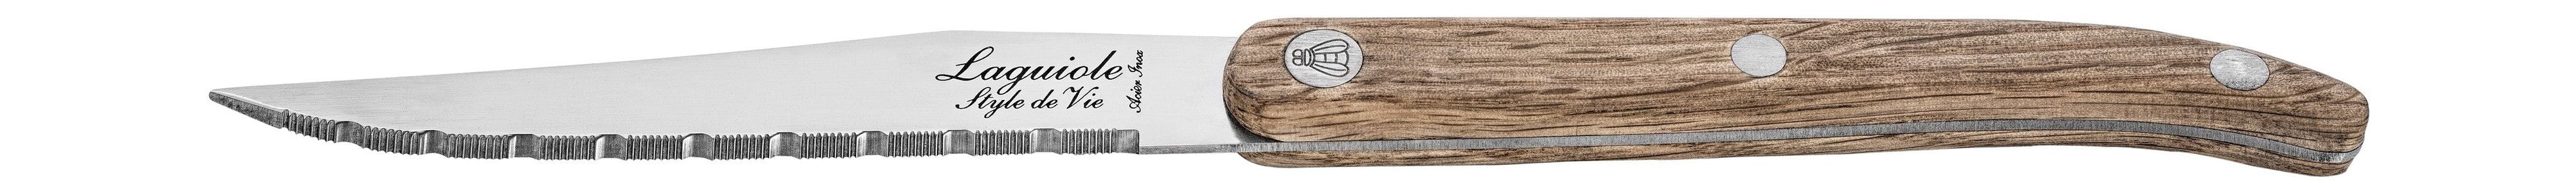 Style de Vie Authentique Laguiole Innovation Line Steak Knives 6 Piece Set Oak Wood, Serred Blade